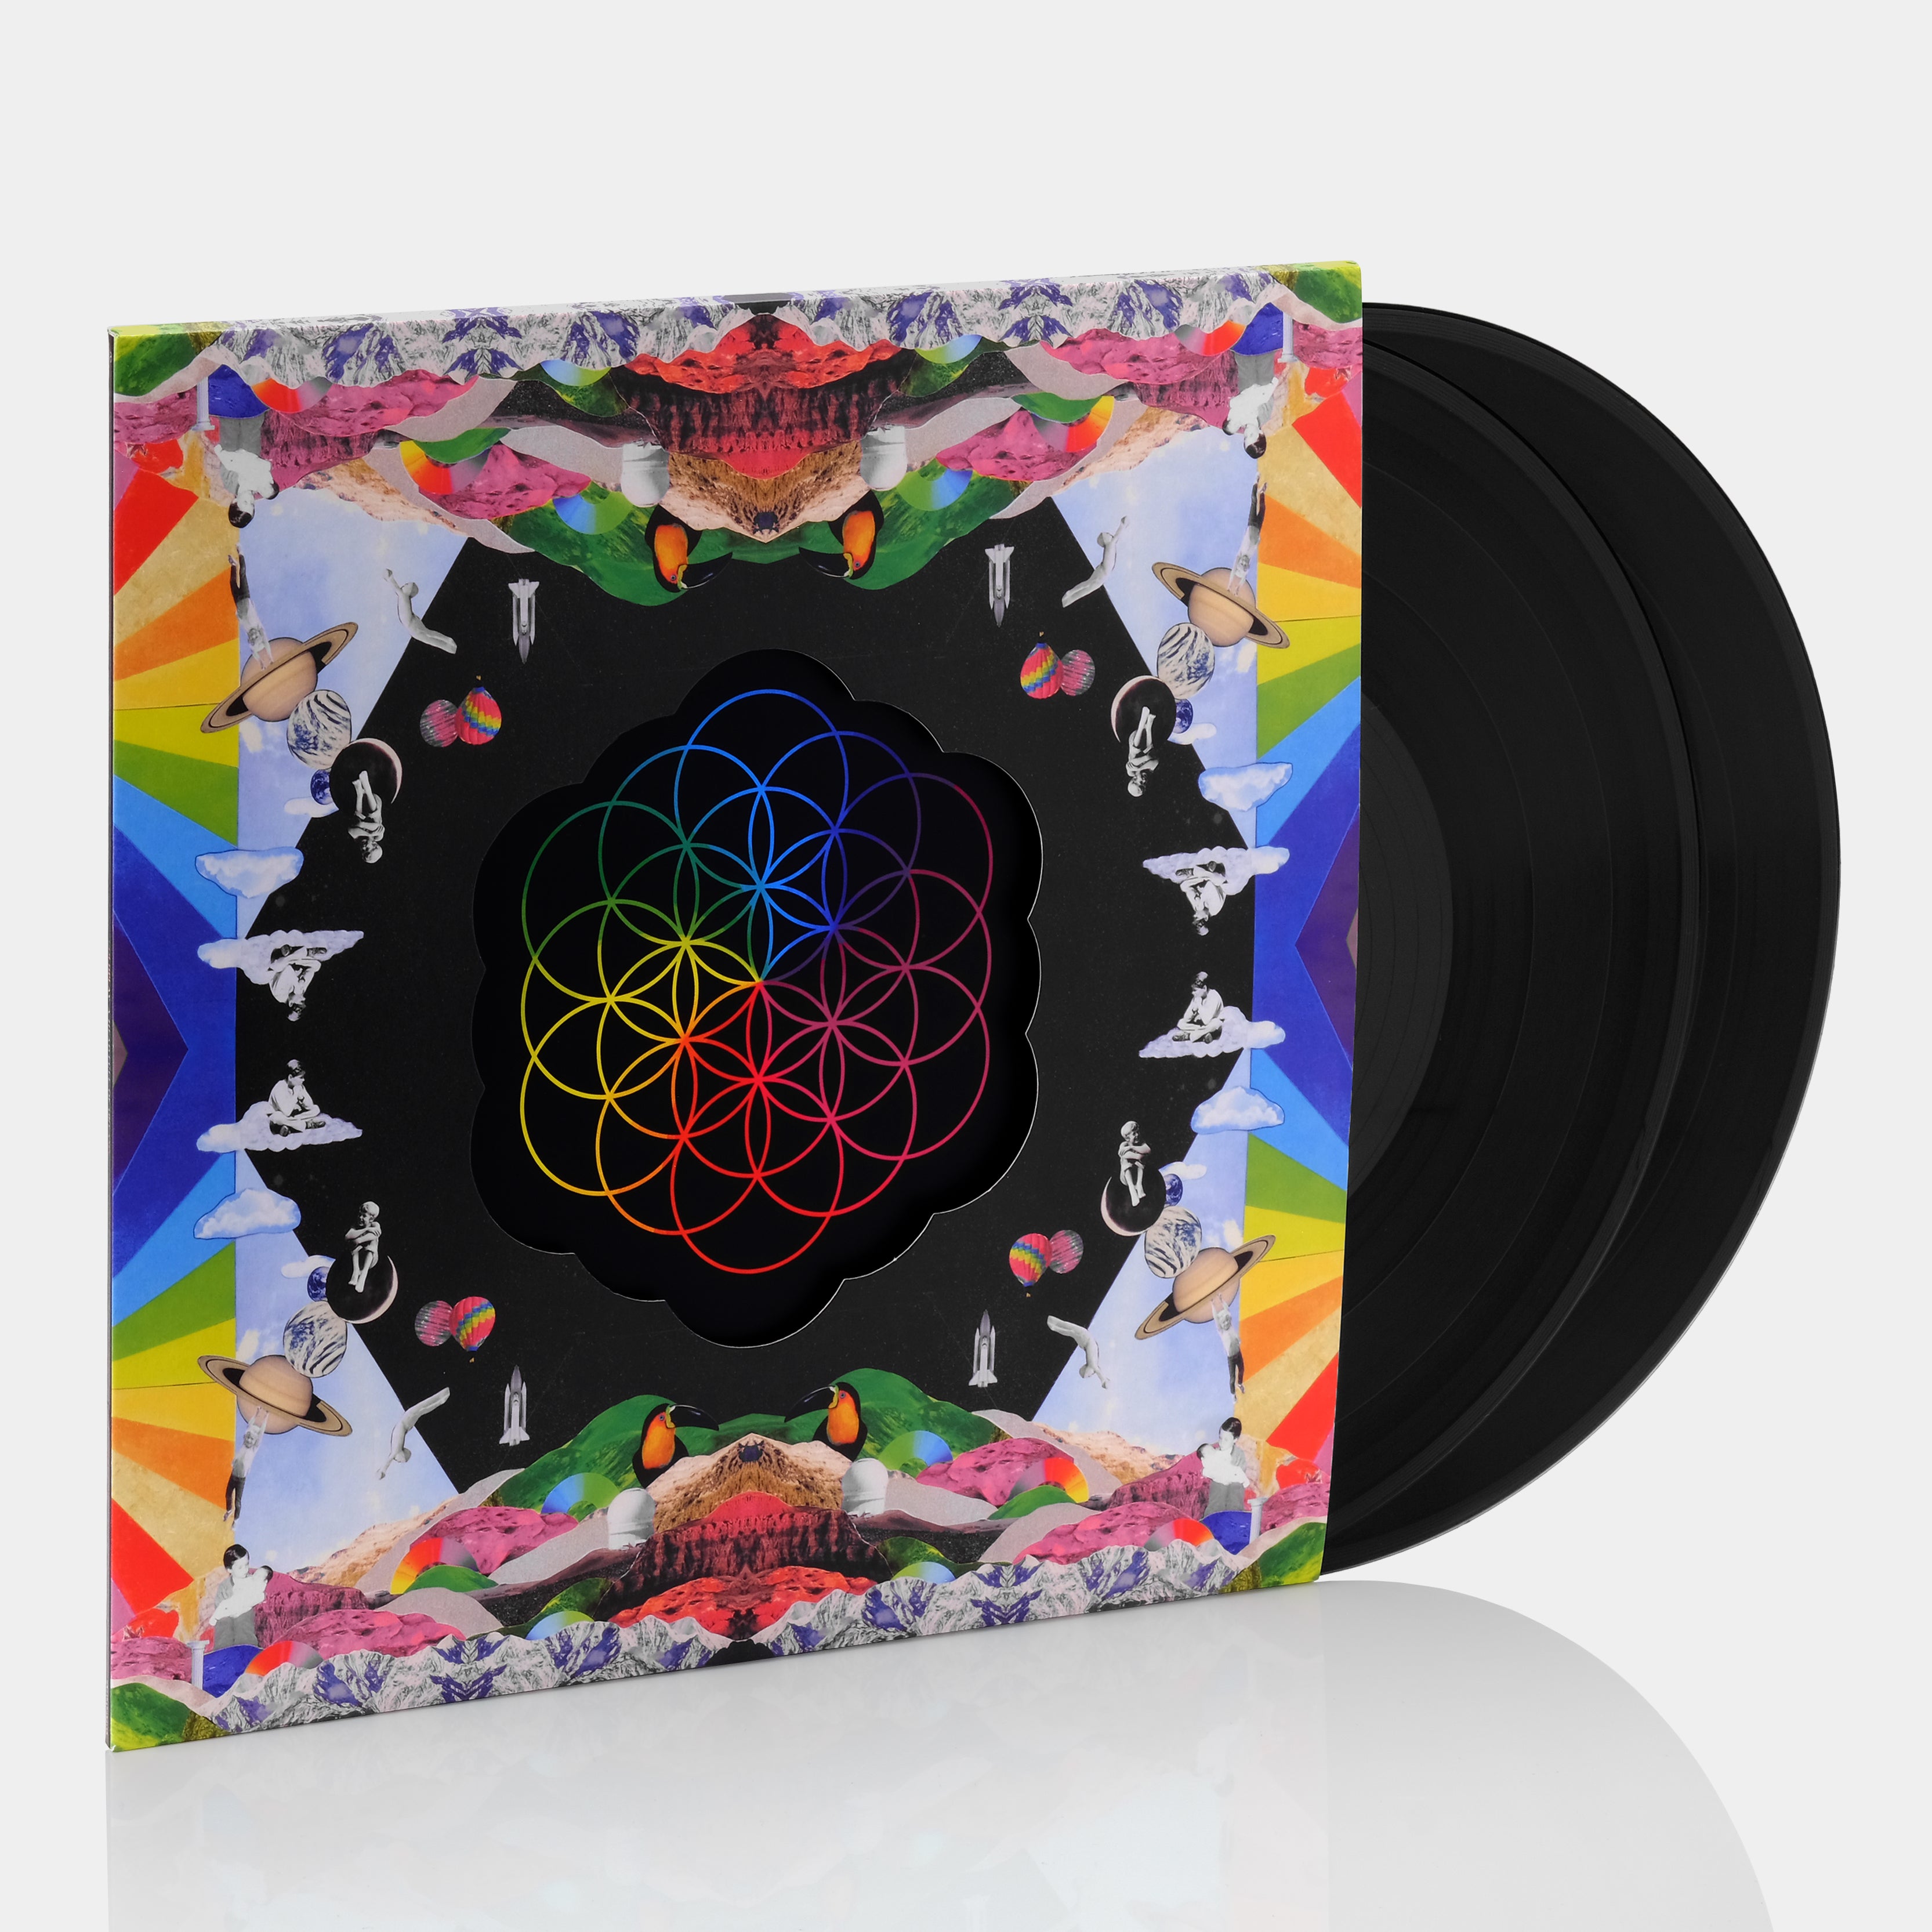 Coldplay - A Head Full Of Dreams 2xLP Vinyl Record